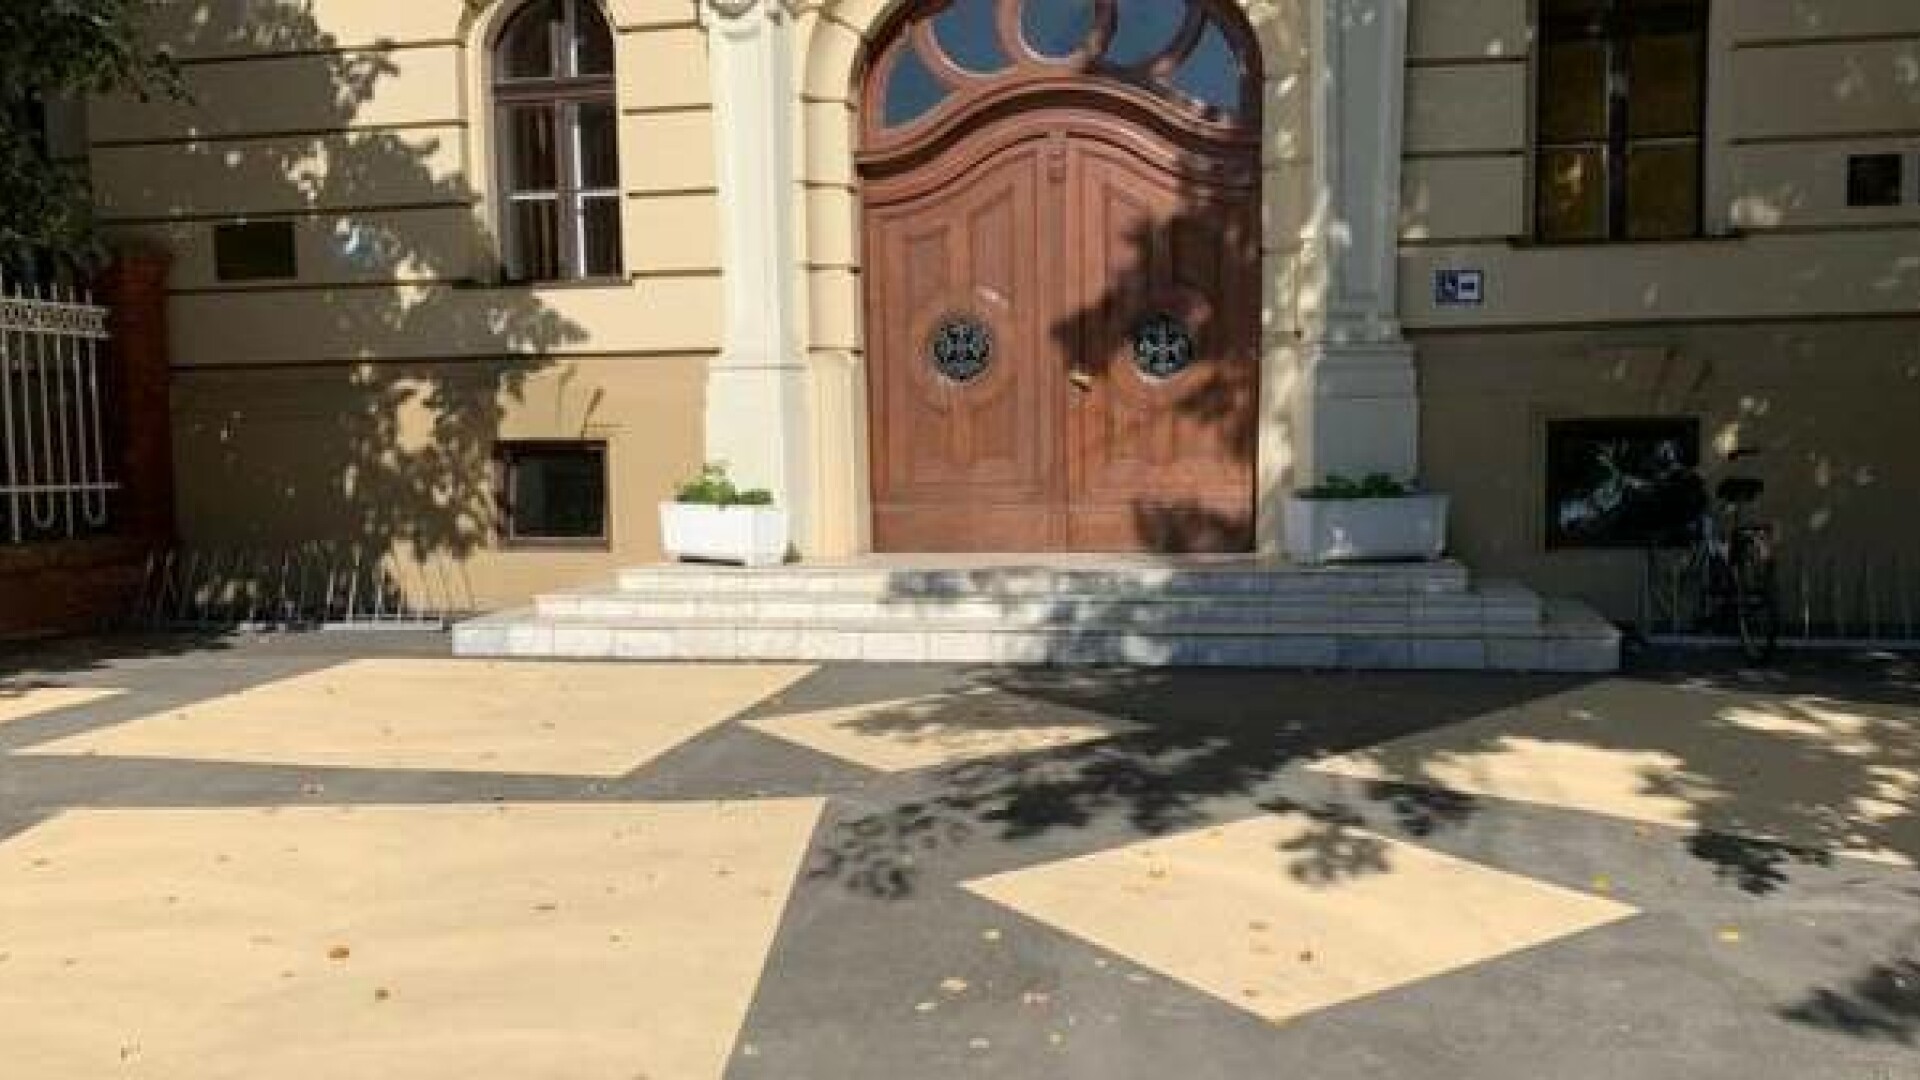 Primăria Timișoara a vopsit cu modele asfaltul pe care l-a turnat la clădirile istorice din oraș. Viceprimar: ”Este un test”